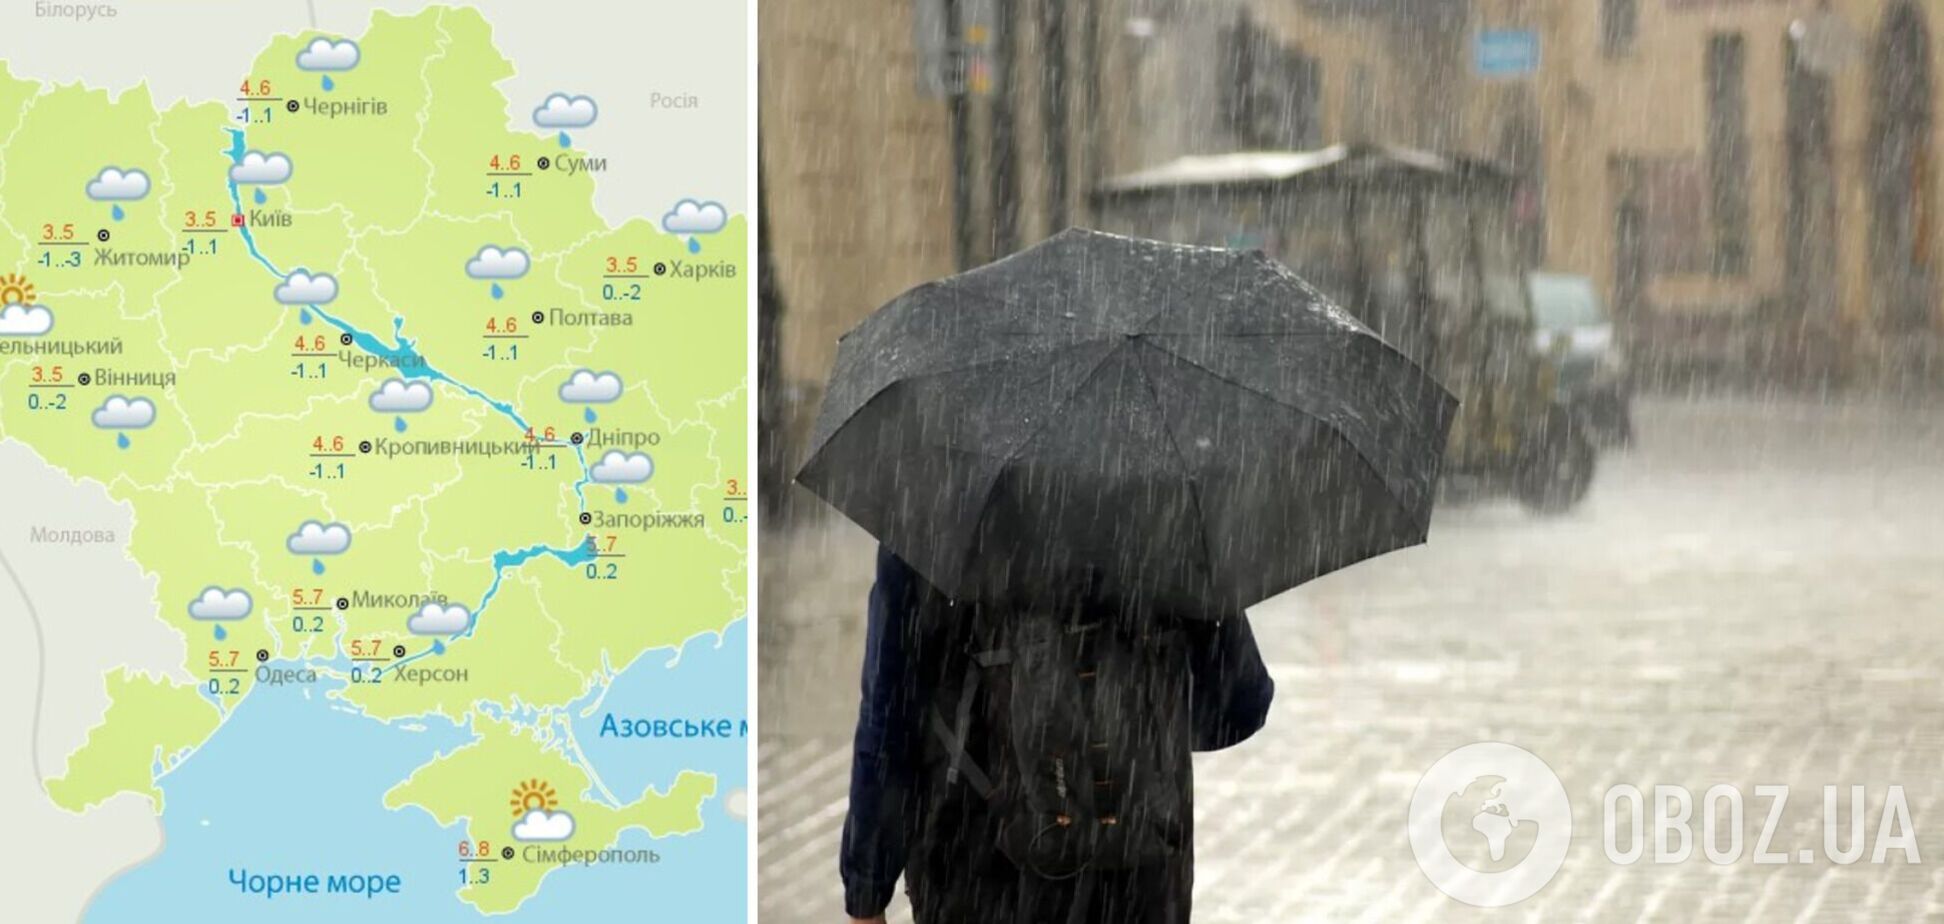 Почти всю Украину накроют дожди: появился прогноз погоды на субботу. Карта